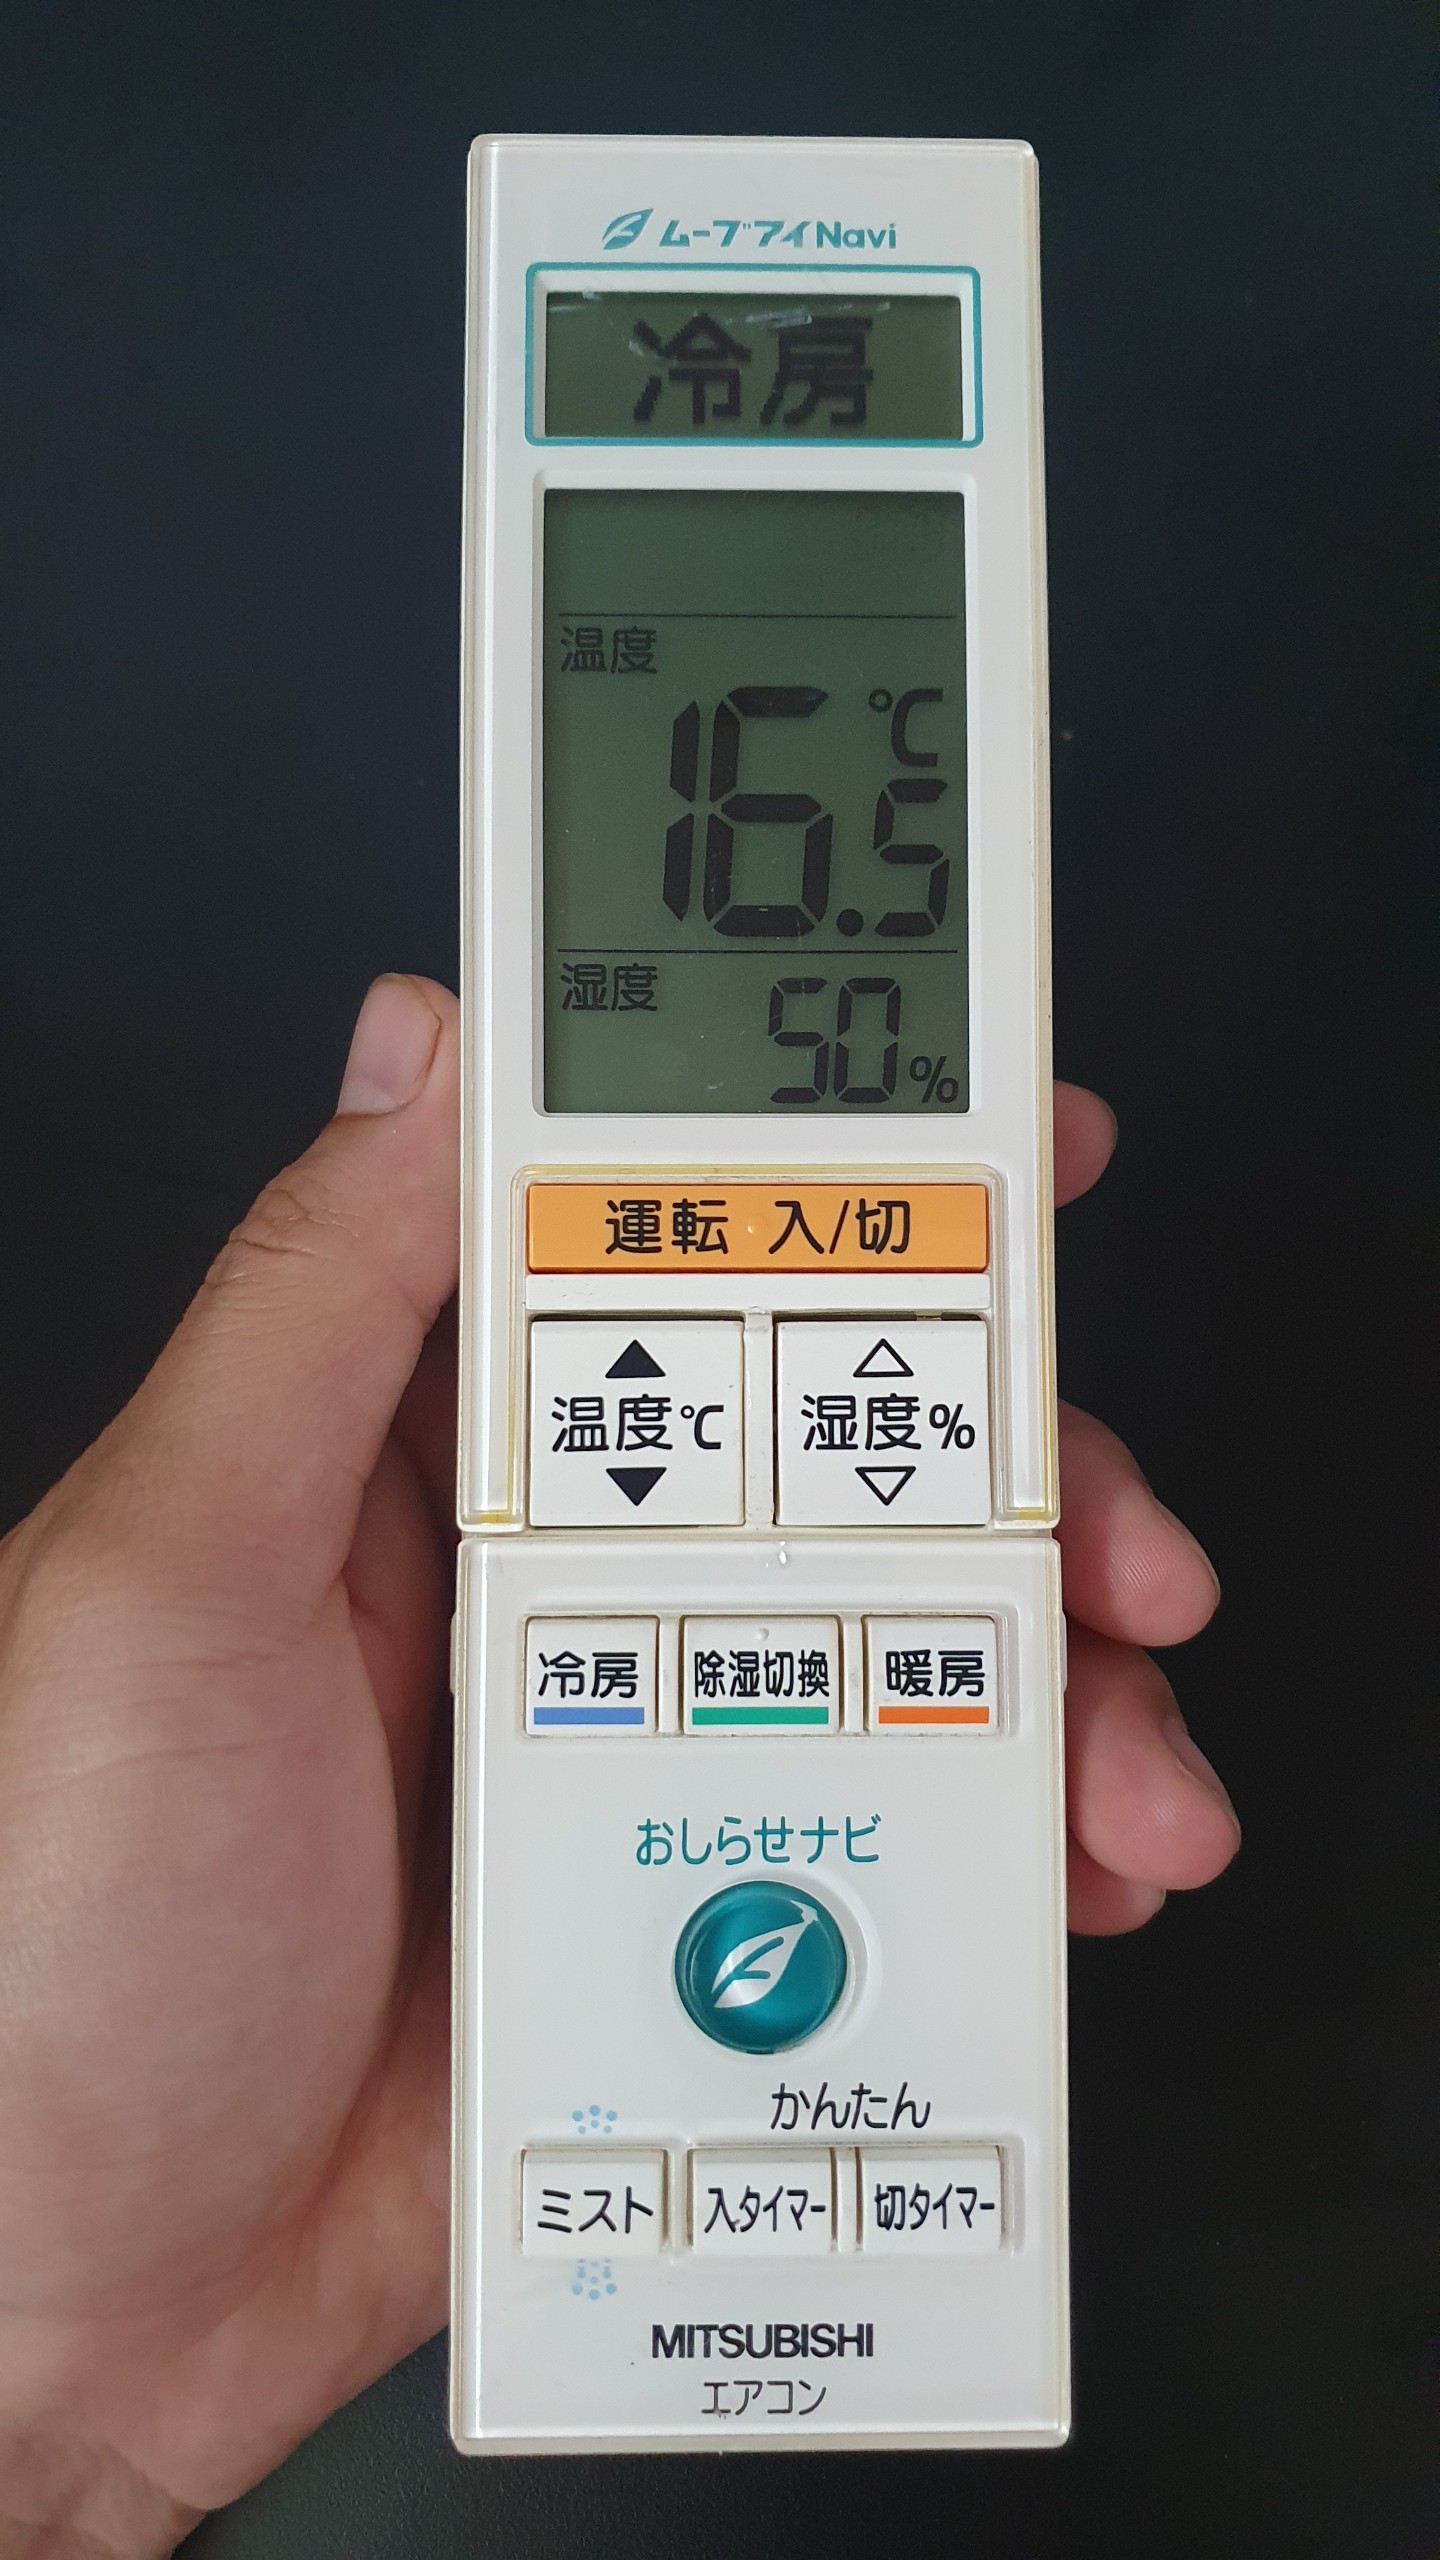 Remote Máy Lạnh Mitsubishi Nội Địa Nhật Đa Chức Năng M211V3426